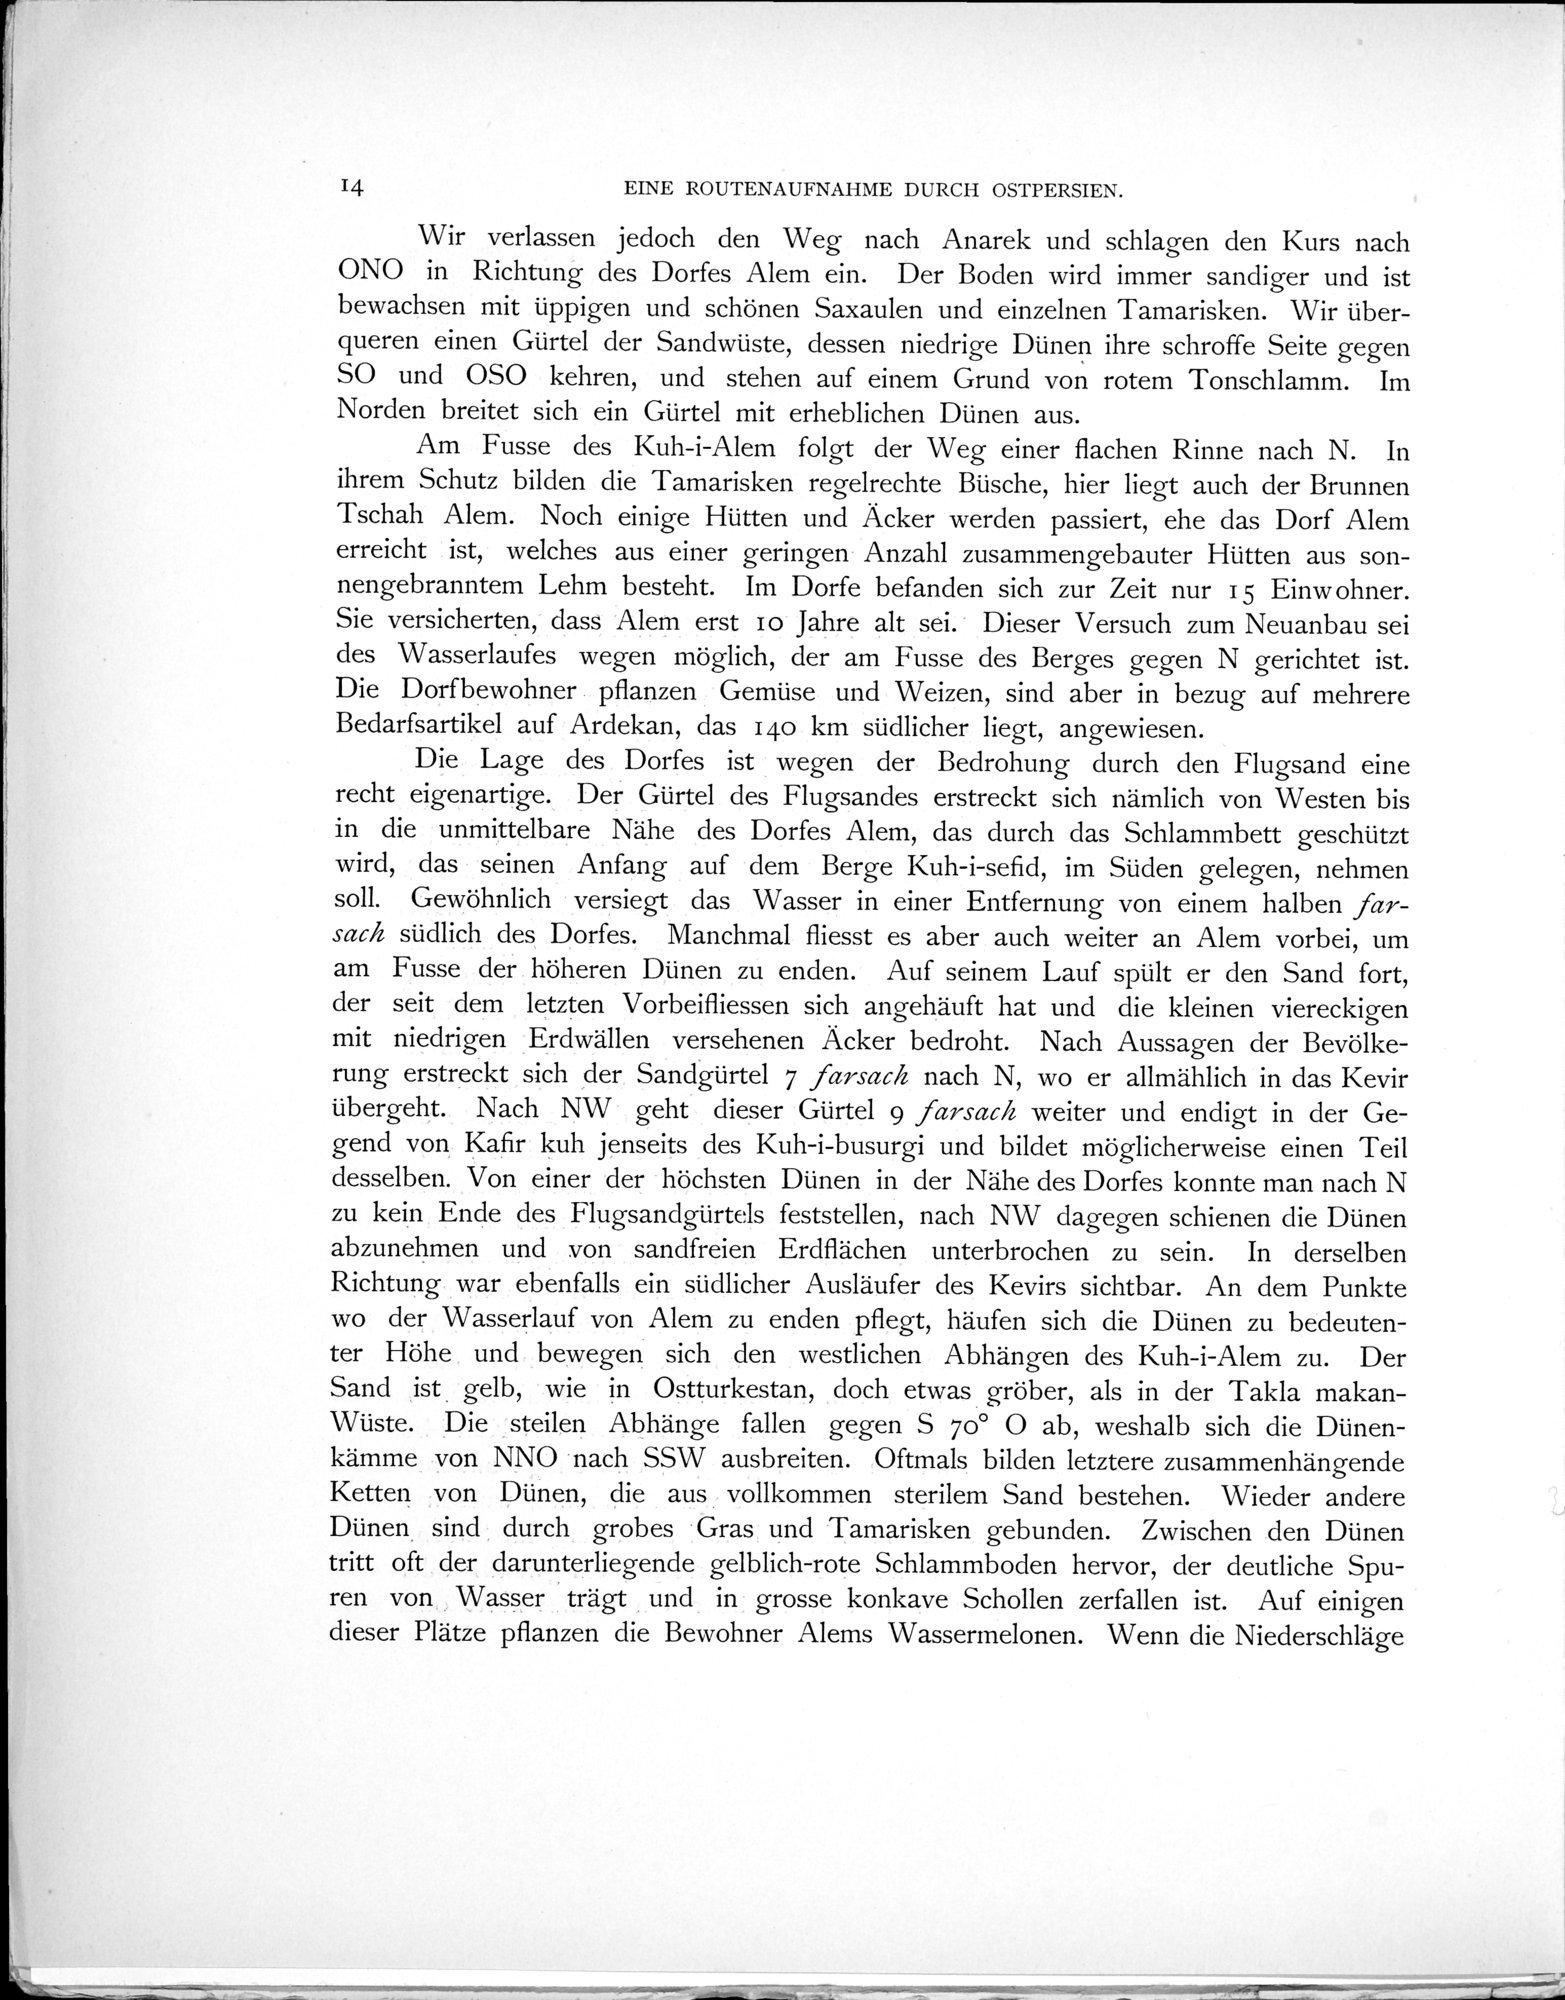 Eine Routenaufnahme durch Ostpersien : vol.1 / Page 56 (Grayscale High Resolution Image)